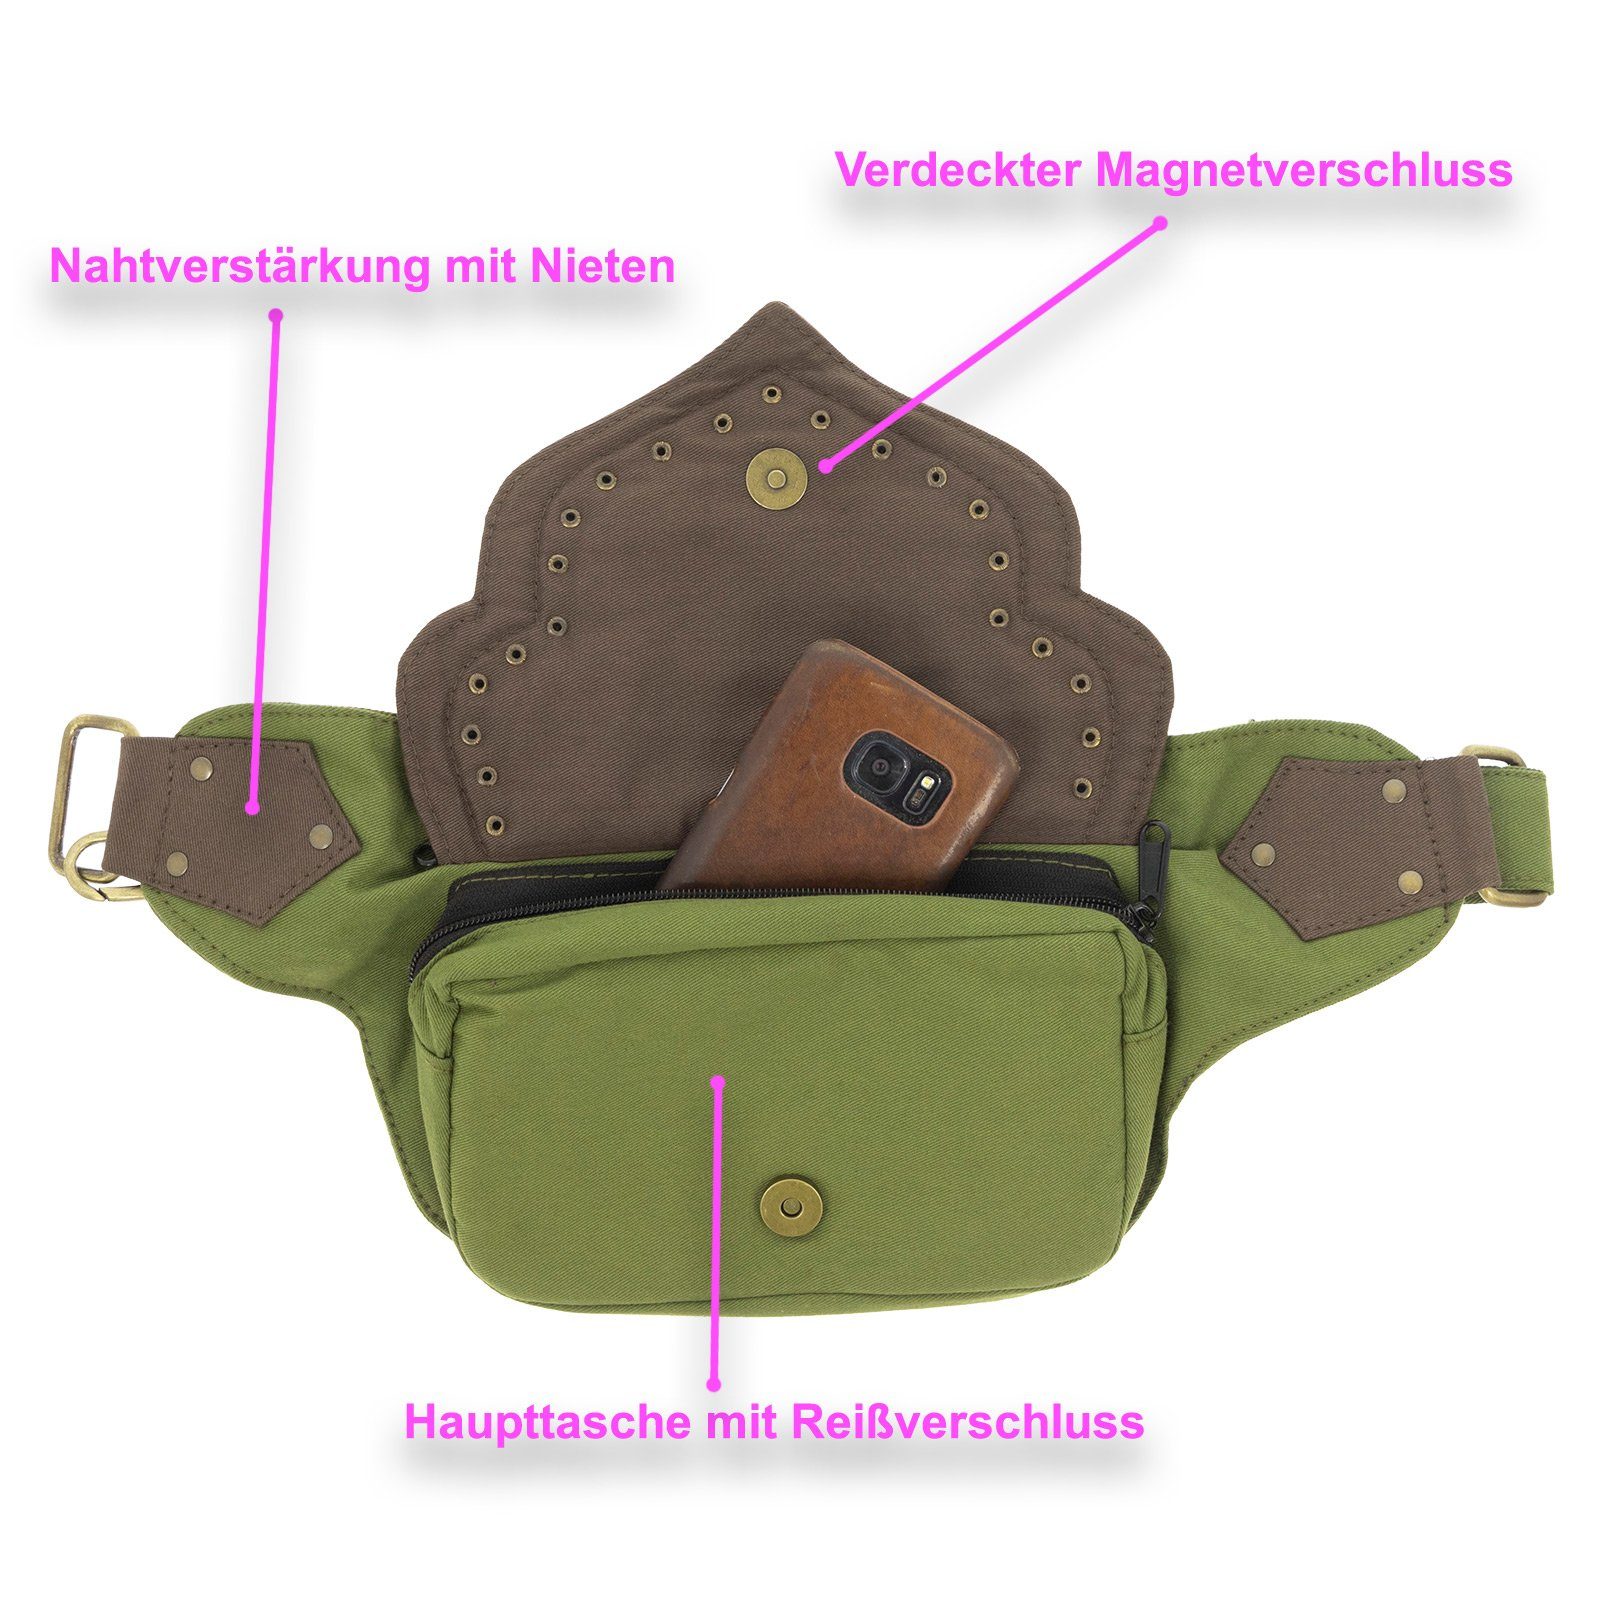 KUNST UND MAGIE Hüfttasche Sidebag Gürteltasche Bauchtasche Hippie Bauchtasche Medival Grün Bauchgurt